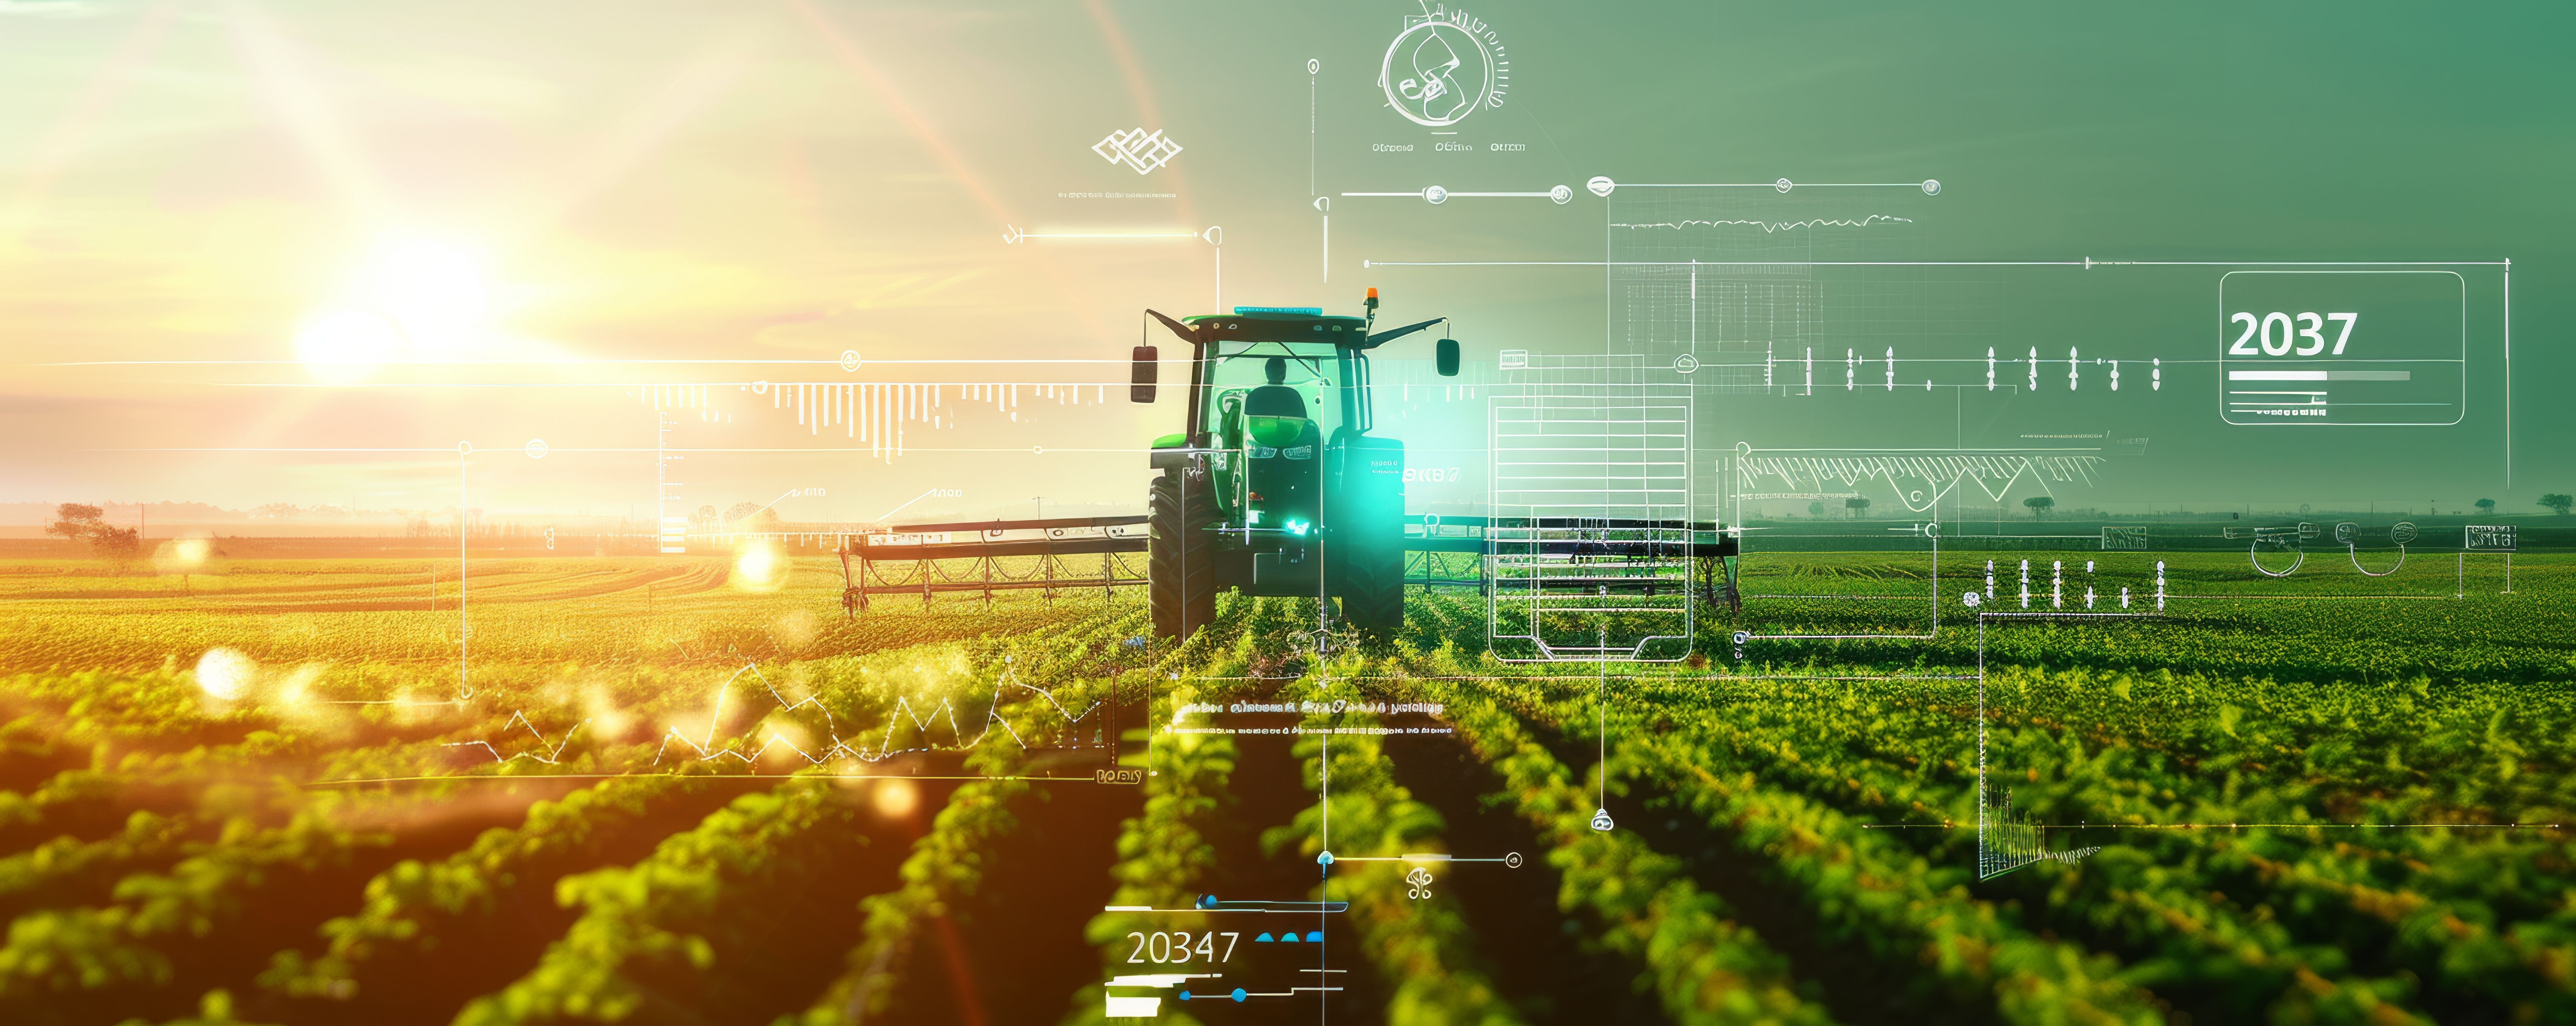 Agricultura Digital y 4.0: ¿En qué punto nos encontramos realmente? 1